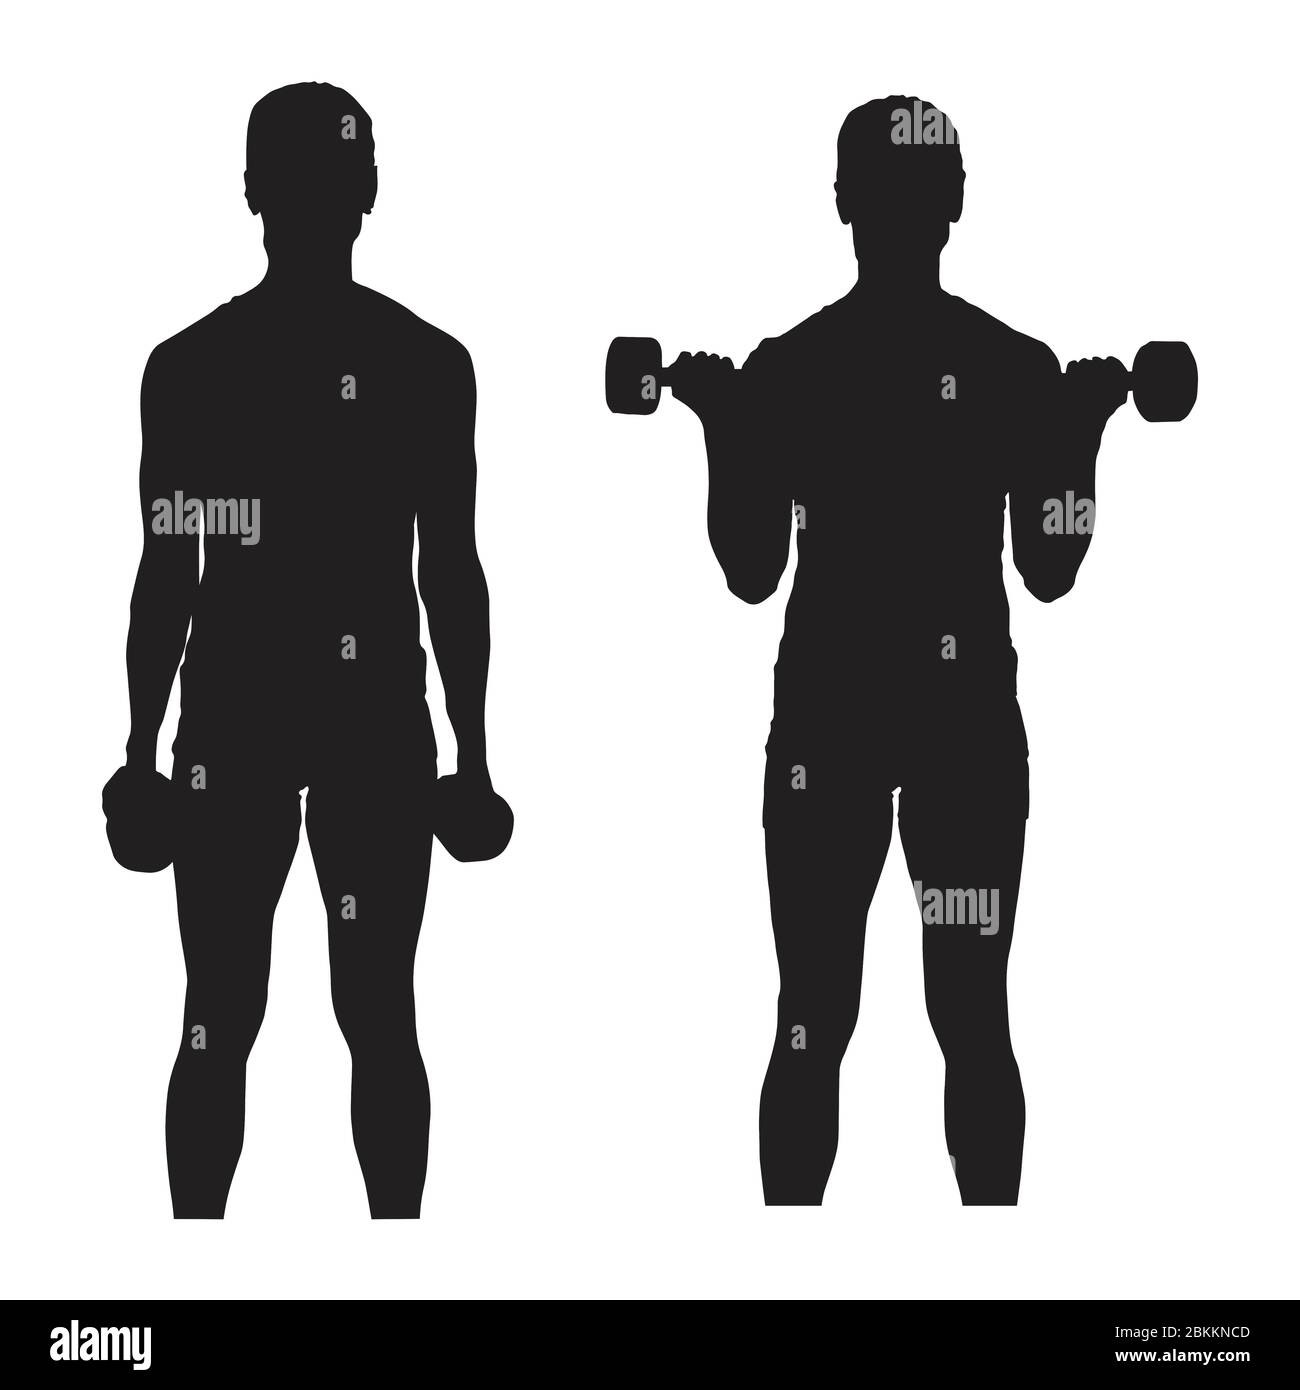 Schwarze Silhouette Darstellung stehend Bizeps Locken Arm Training Übung isoliert auf einem weißen Hintergrund. EPS-Vektor Stock Vektor